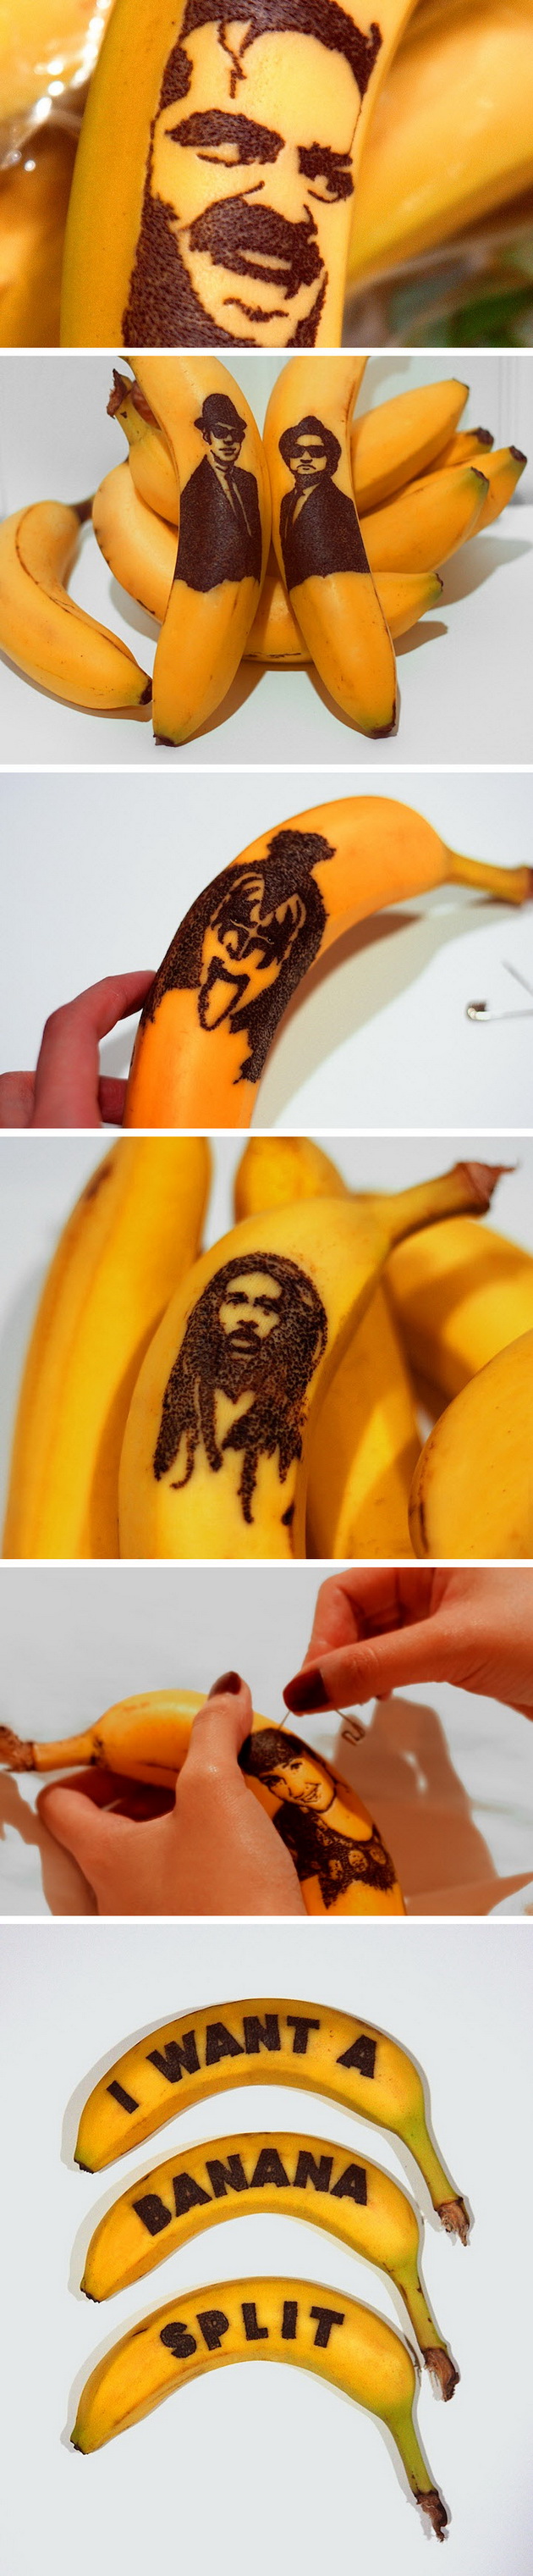 Banana Art02_resize.jpg